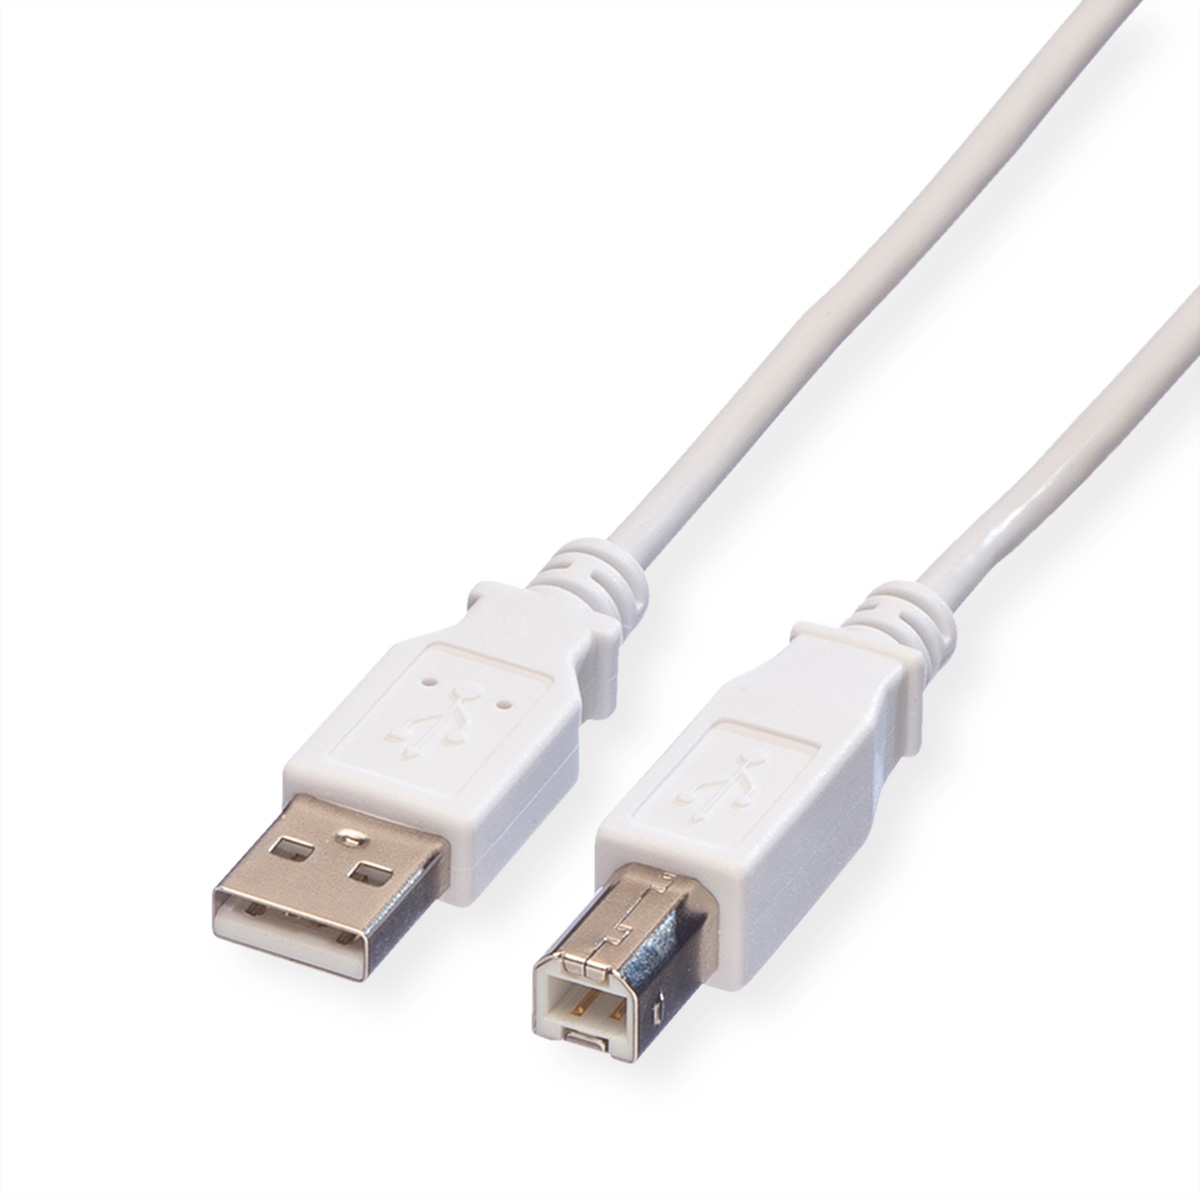 USB Kabel Kabel VALUE 2.0 USB 2.0